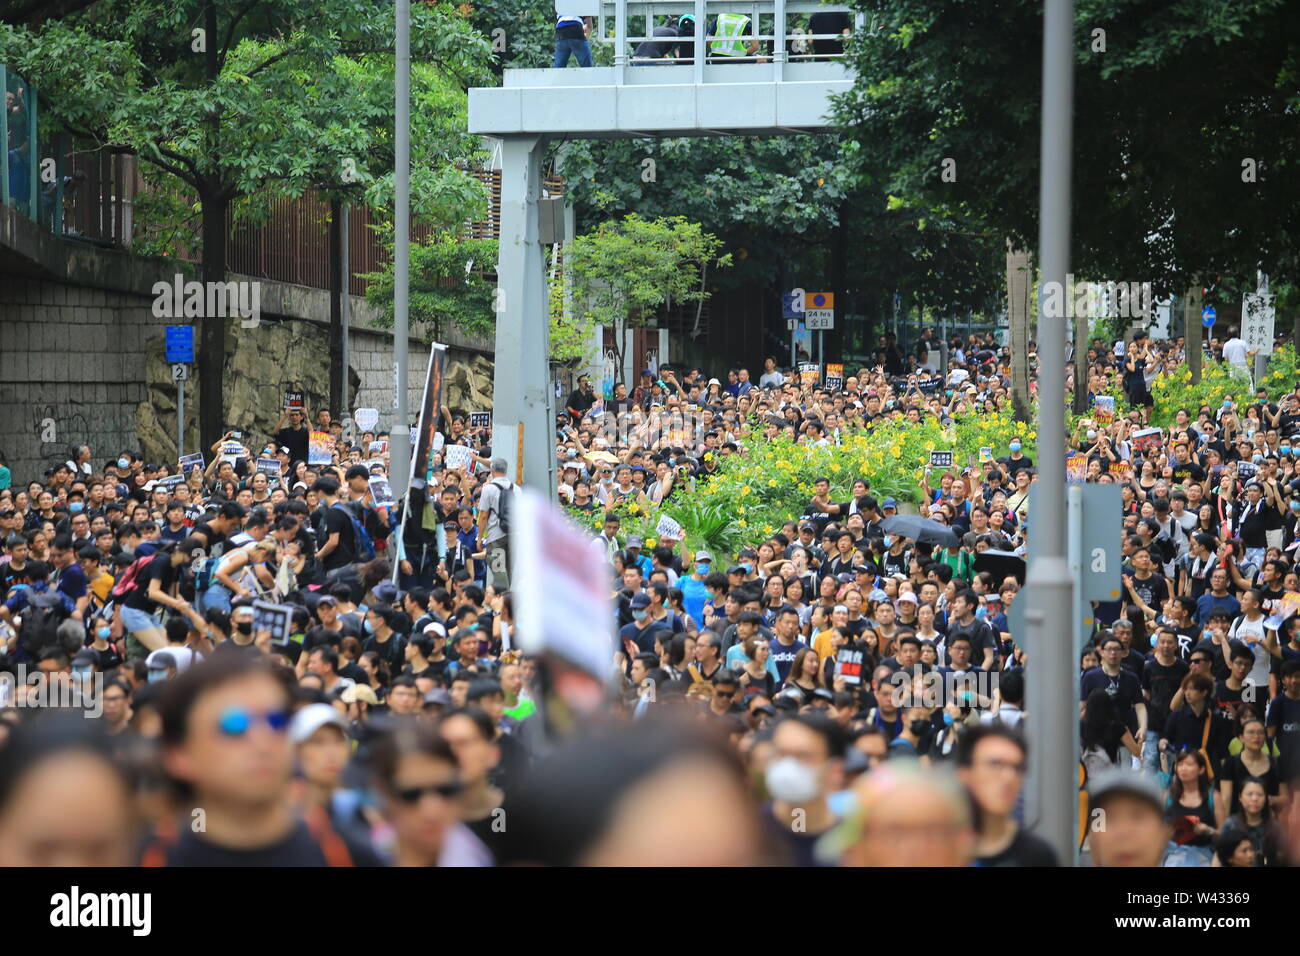 La foule protester le Kowloon. Plus de 50 000 manifestants sont descendus dans les rues de Kowloon le dimanche pour s'opposer à un projet de loi sur l'extradition controversée Banque D'Images